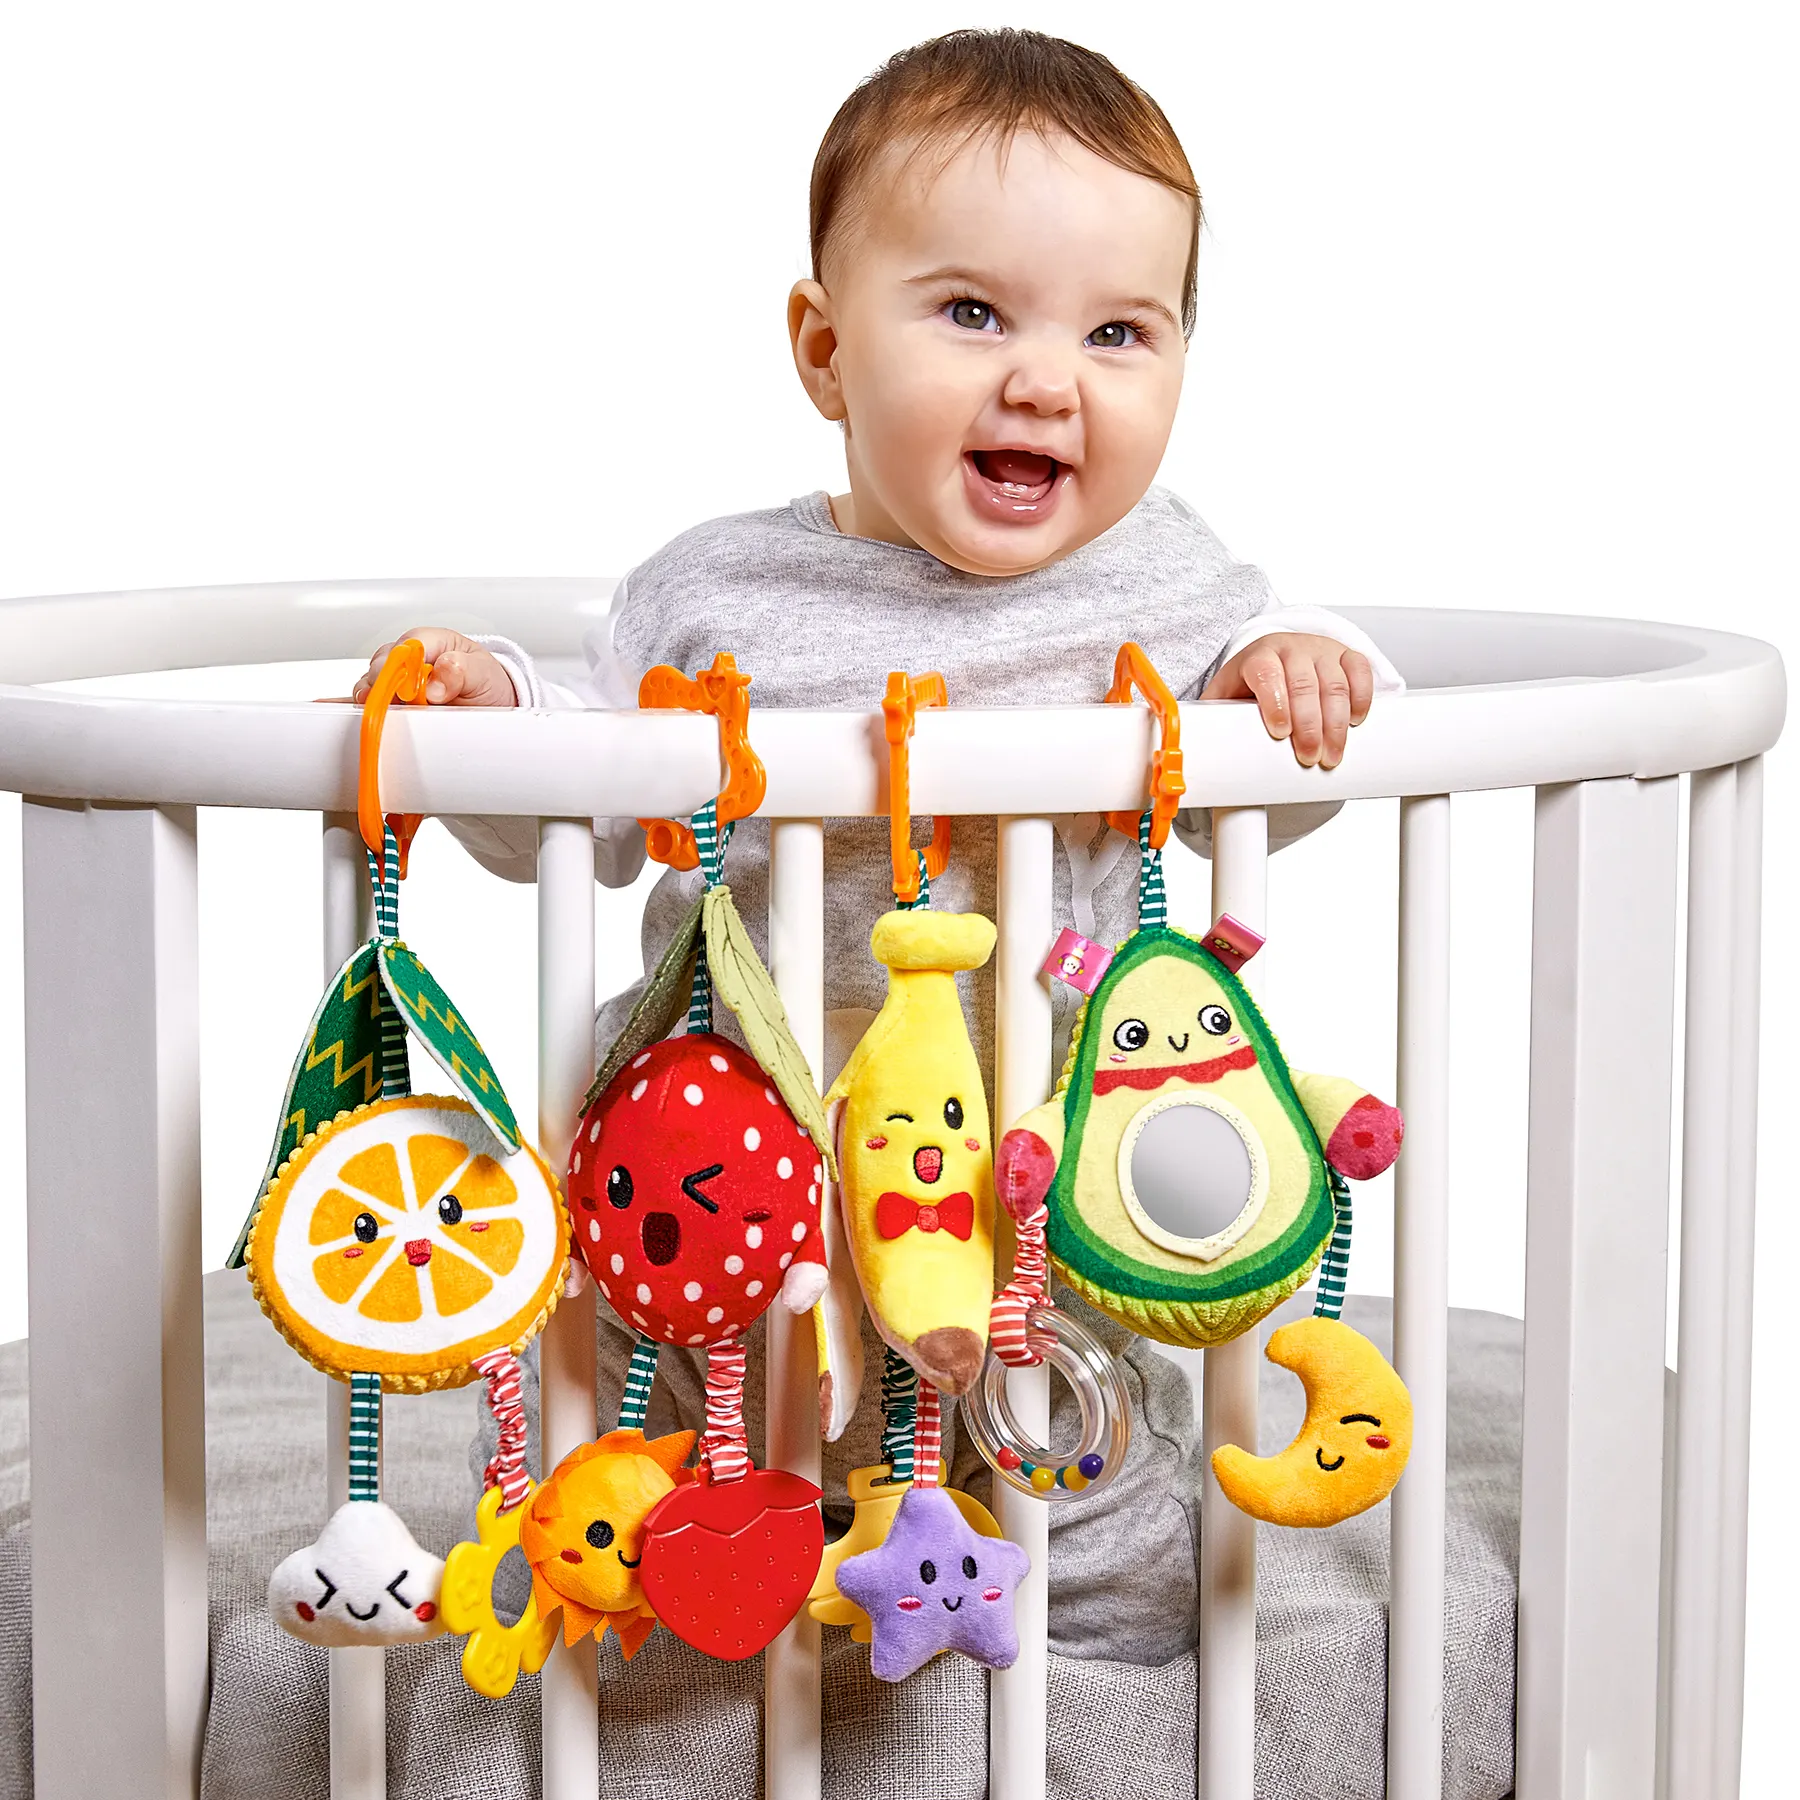 Tumama Fruit Strawberry Banana Orange Avocado Soft Infant Rattle And Teether Toy Plush Hanging Baby Stroller Rattles Toys